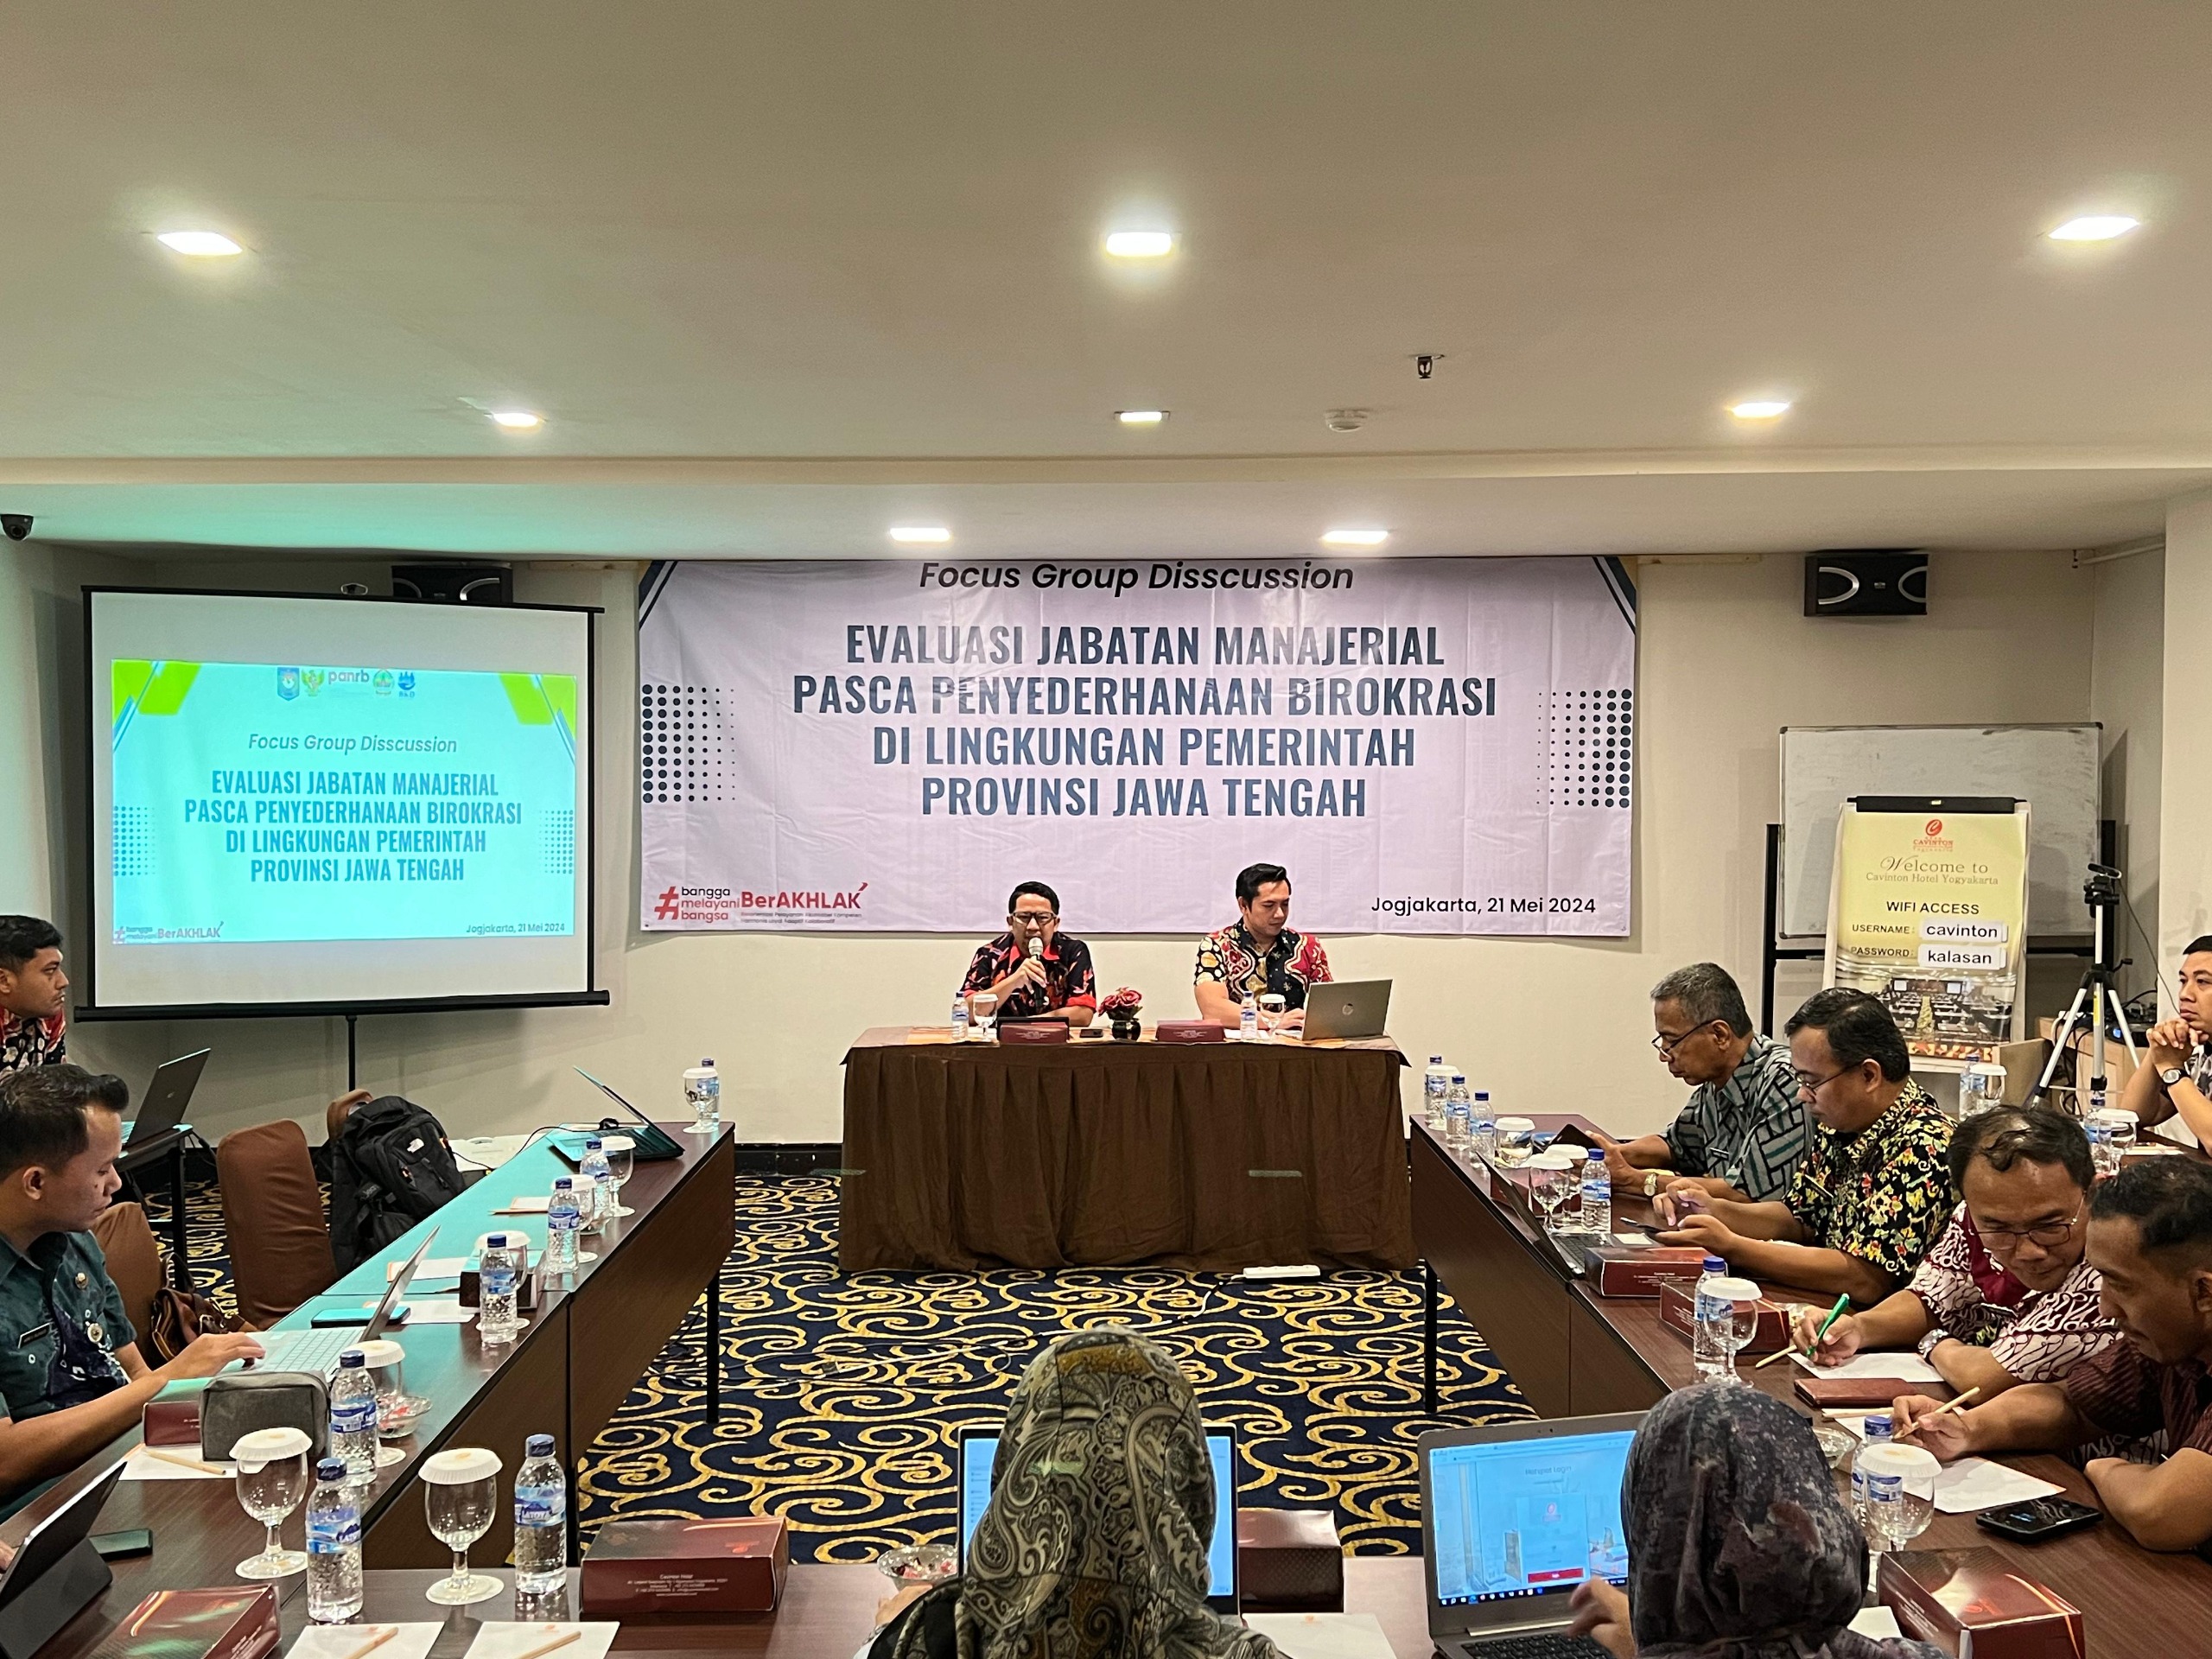 Focus Group Discussion Evaluasi Jabatan Manajerial Pasca Penyederhanaan Birokrasi di Lingkungan Pemerintah Provinsi Jawa Tengah